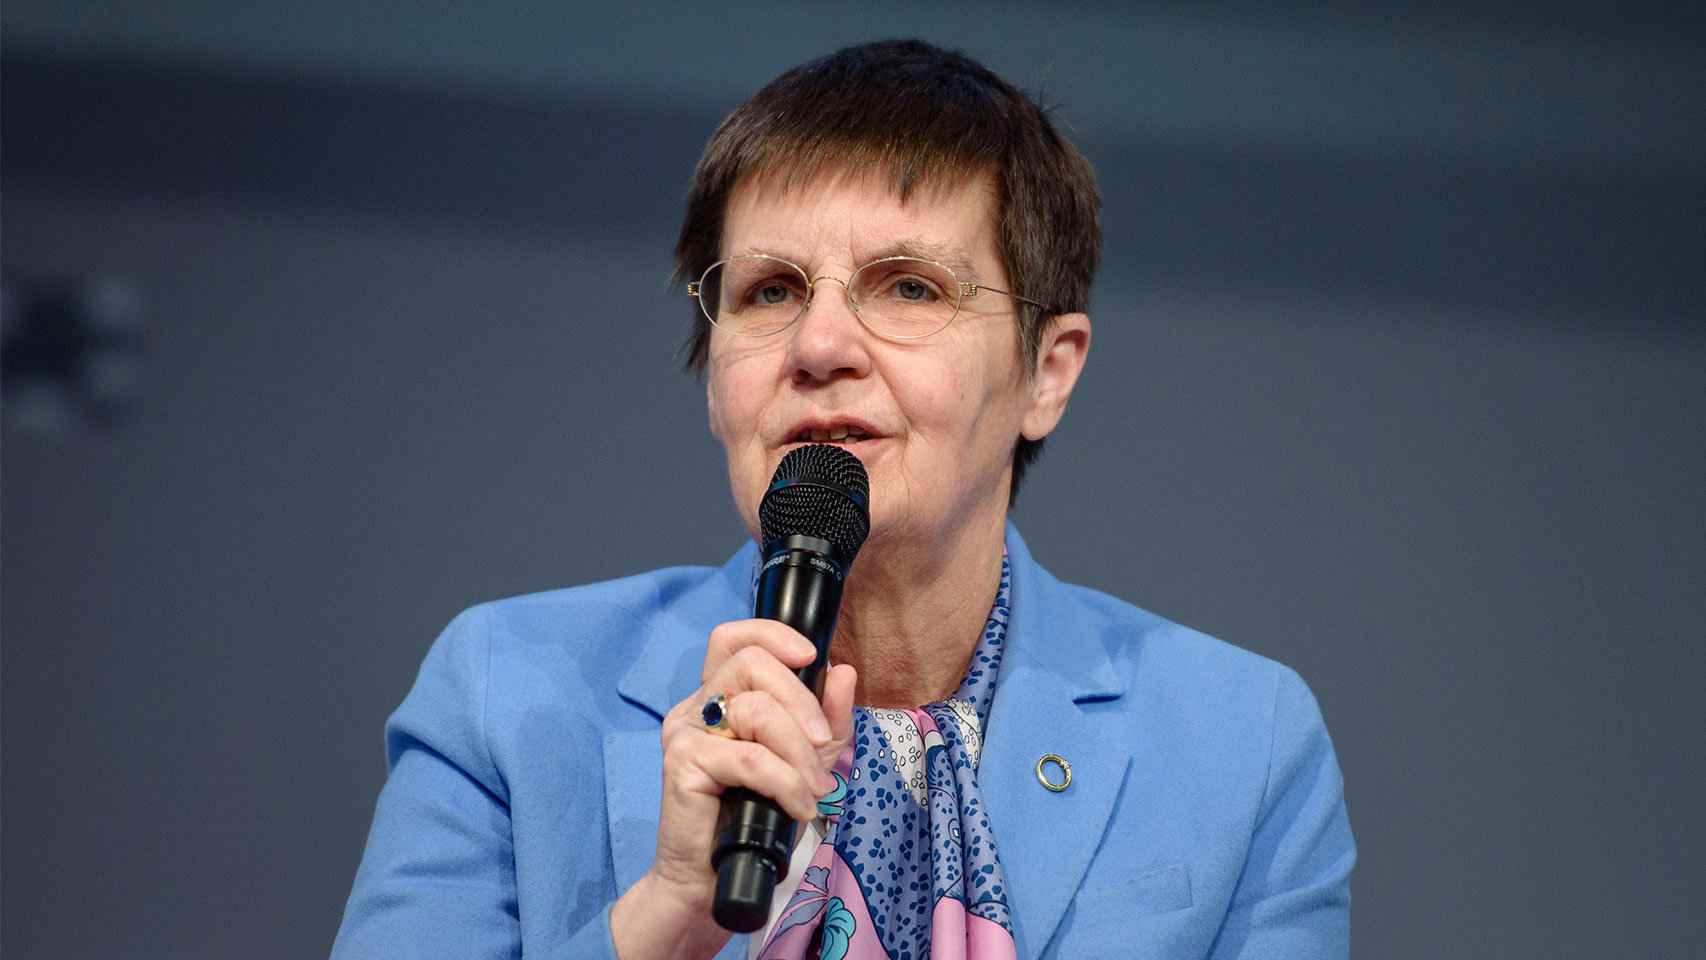 Elke König, presidenta de la Junta Única de Resolución (JUR).